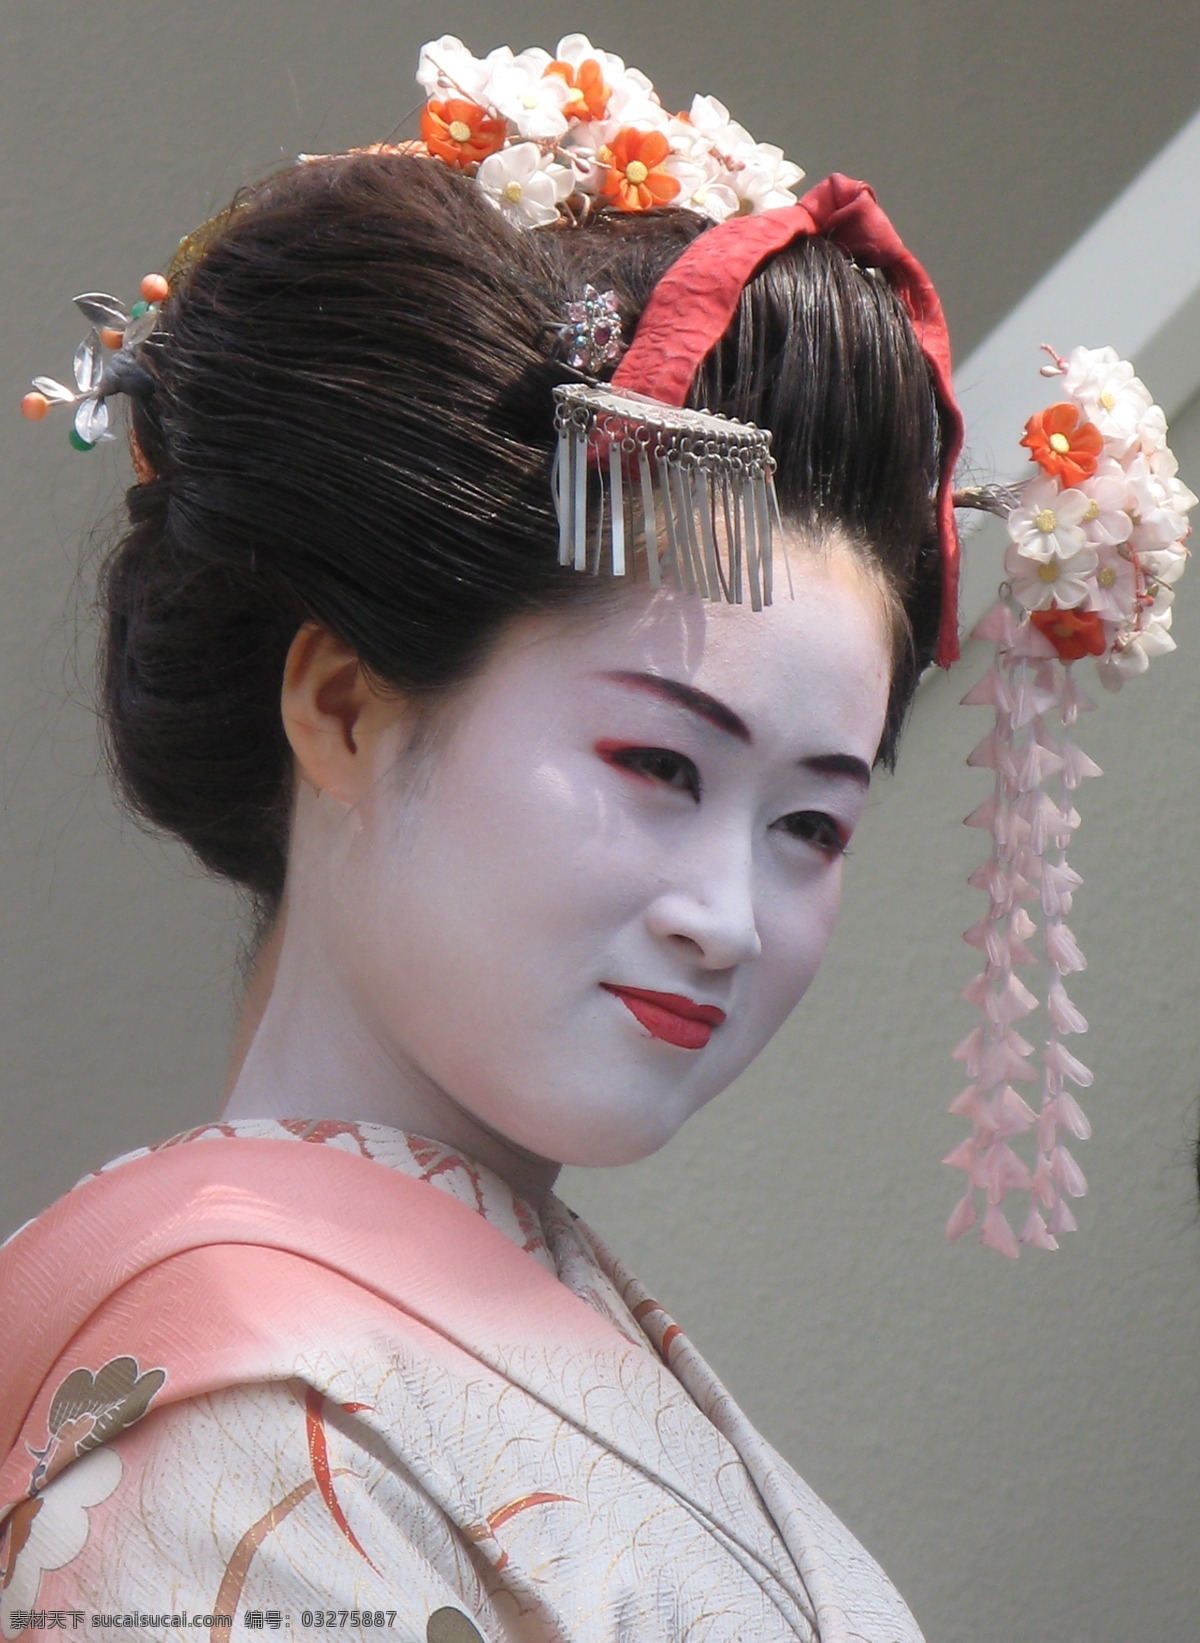 日本艺妓 日本 女性 歌舞伎 艺妓 肖像 女性女人 人物图库